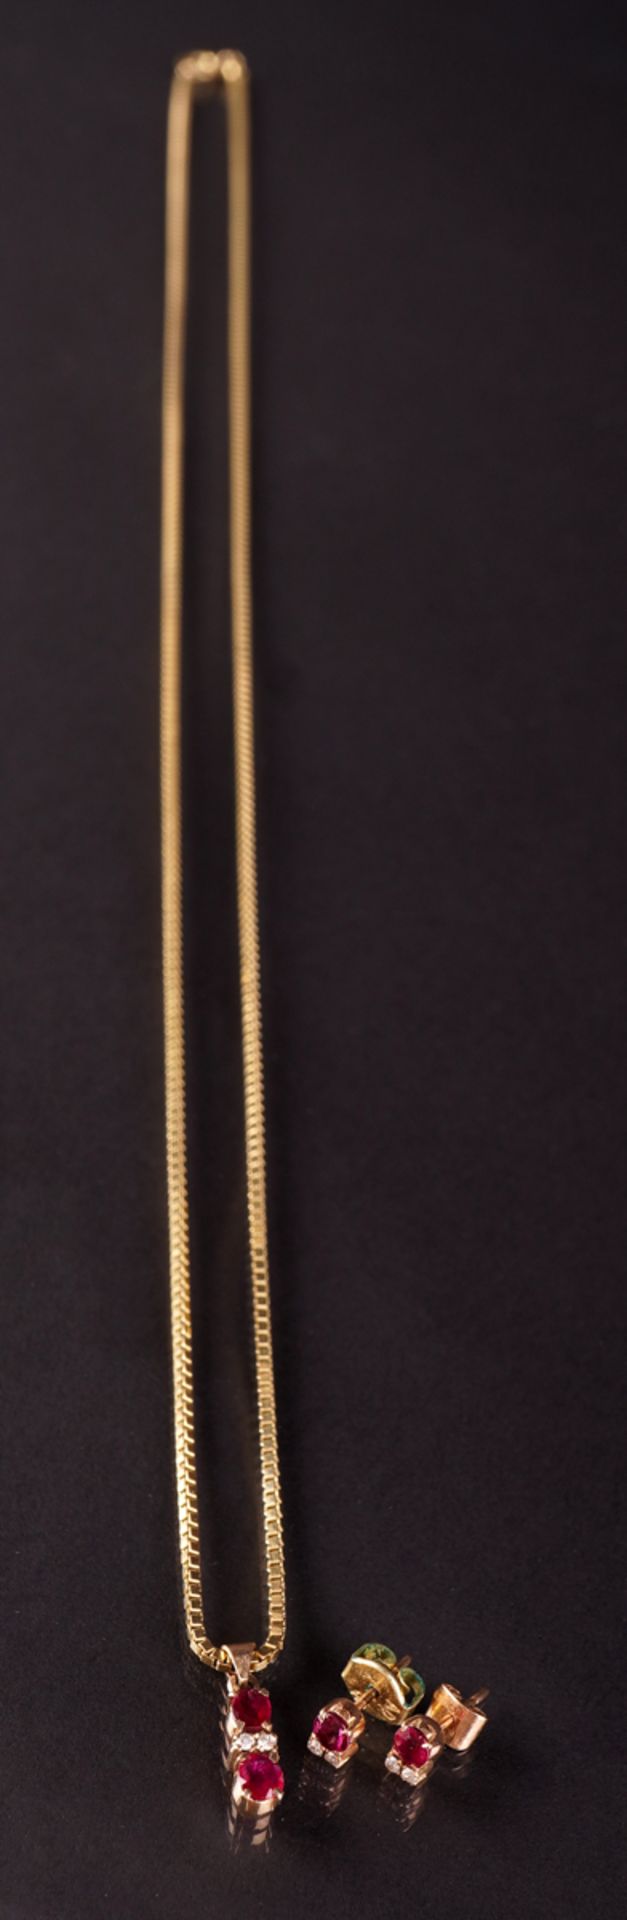 Kette mit Rubinanhänger mit passenden Ohrsteckern, GG 585/333 - Bild 3 aus 5